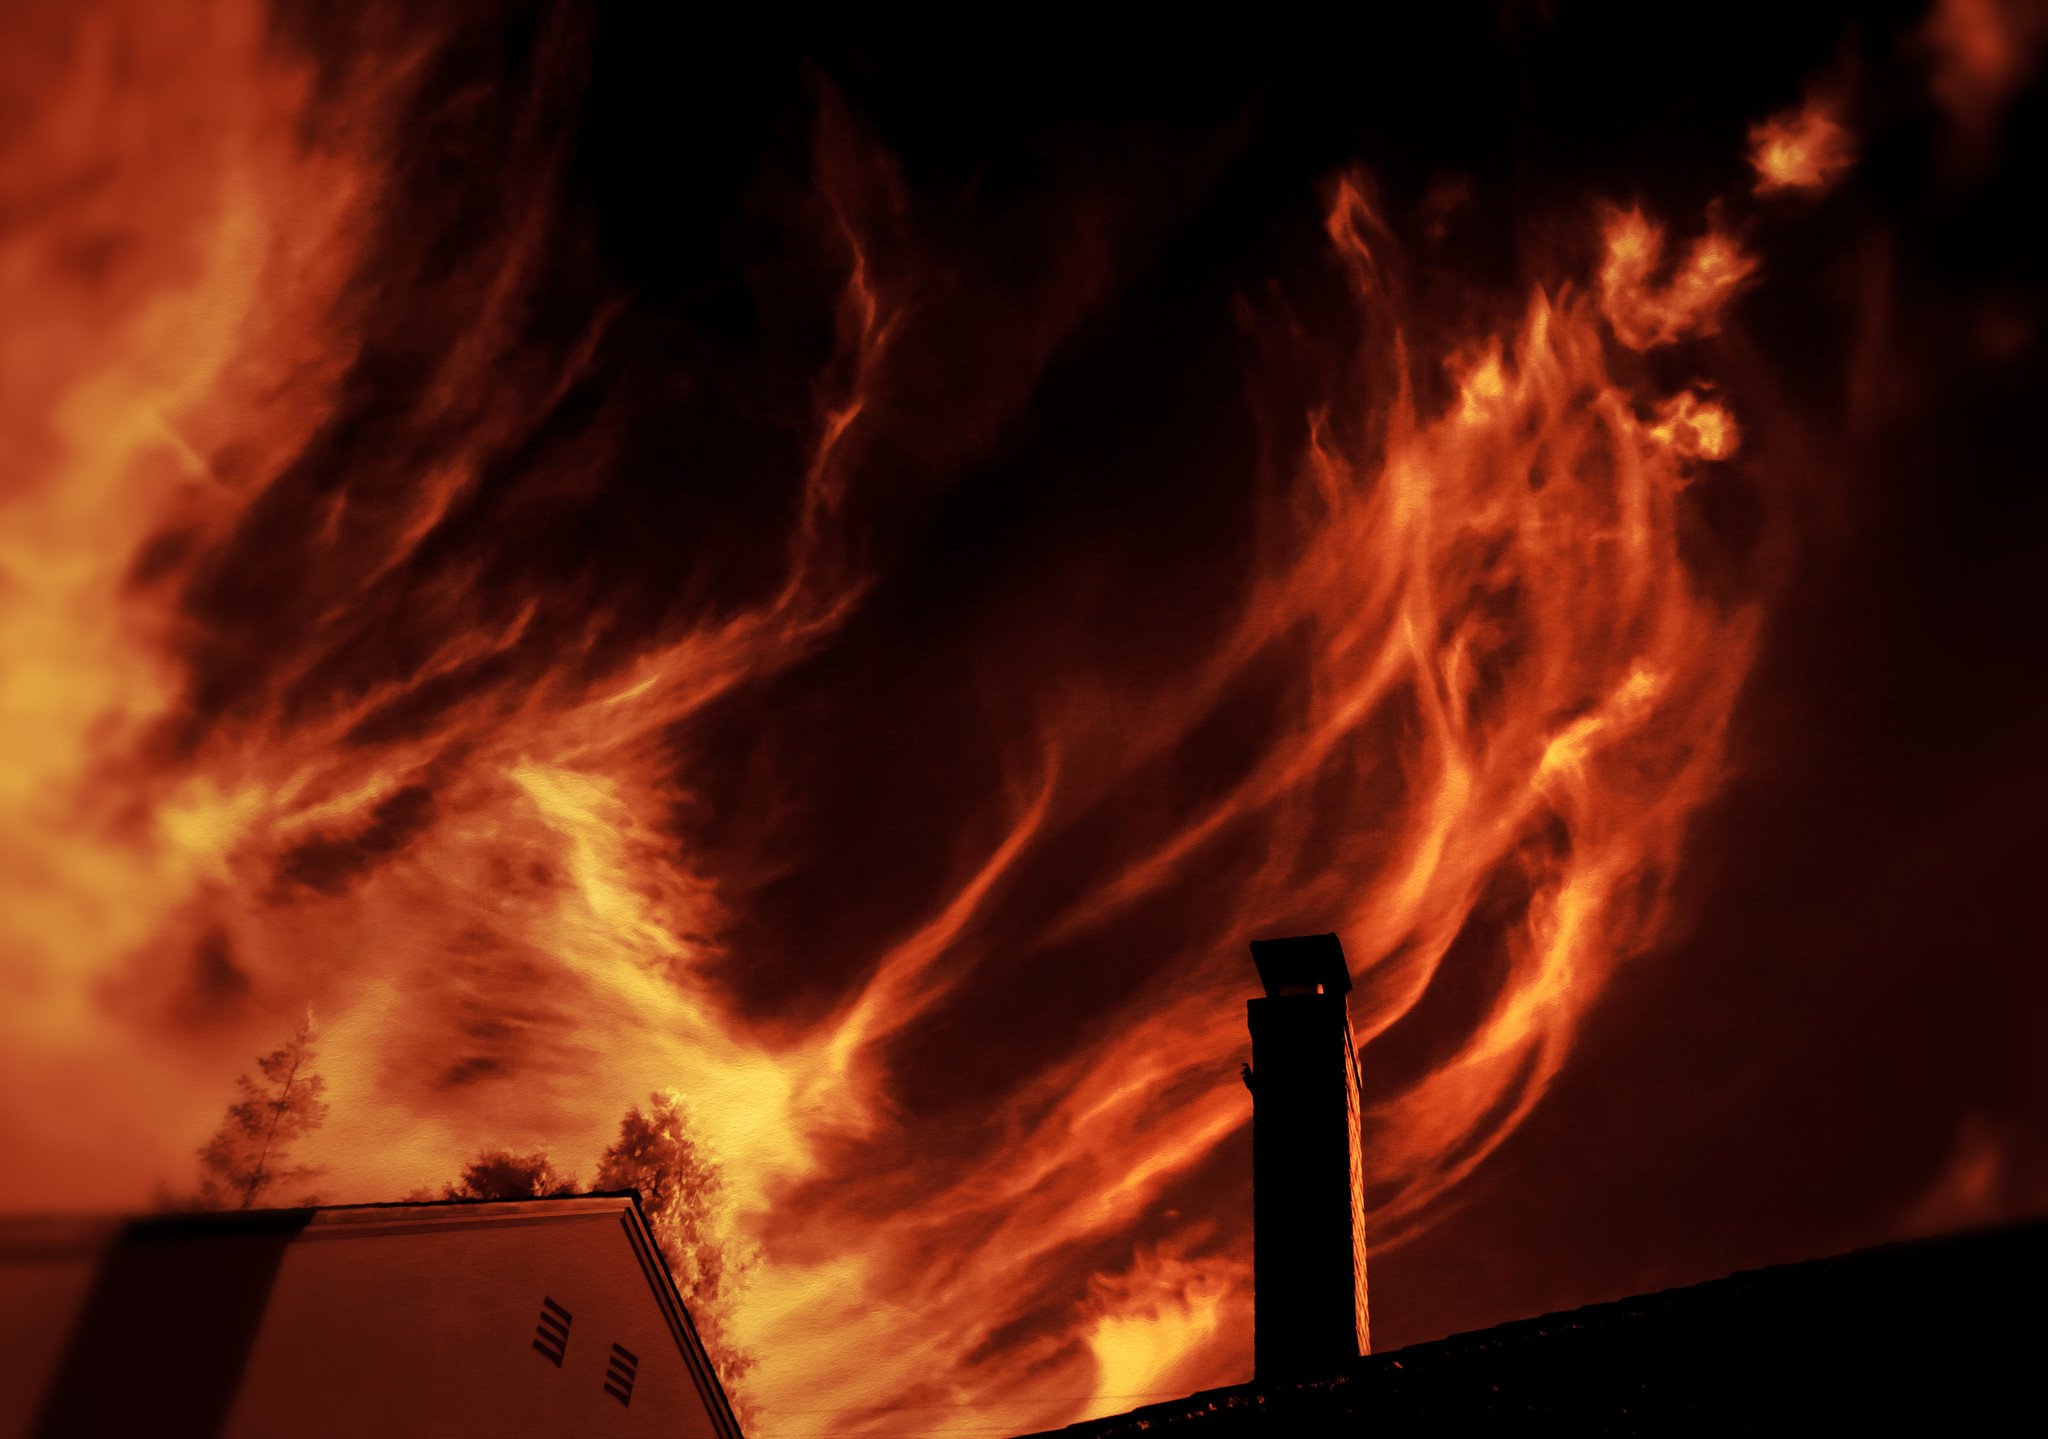 Incendio sobre el techo de una vivienda. | Imagen: Flickr